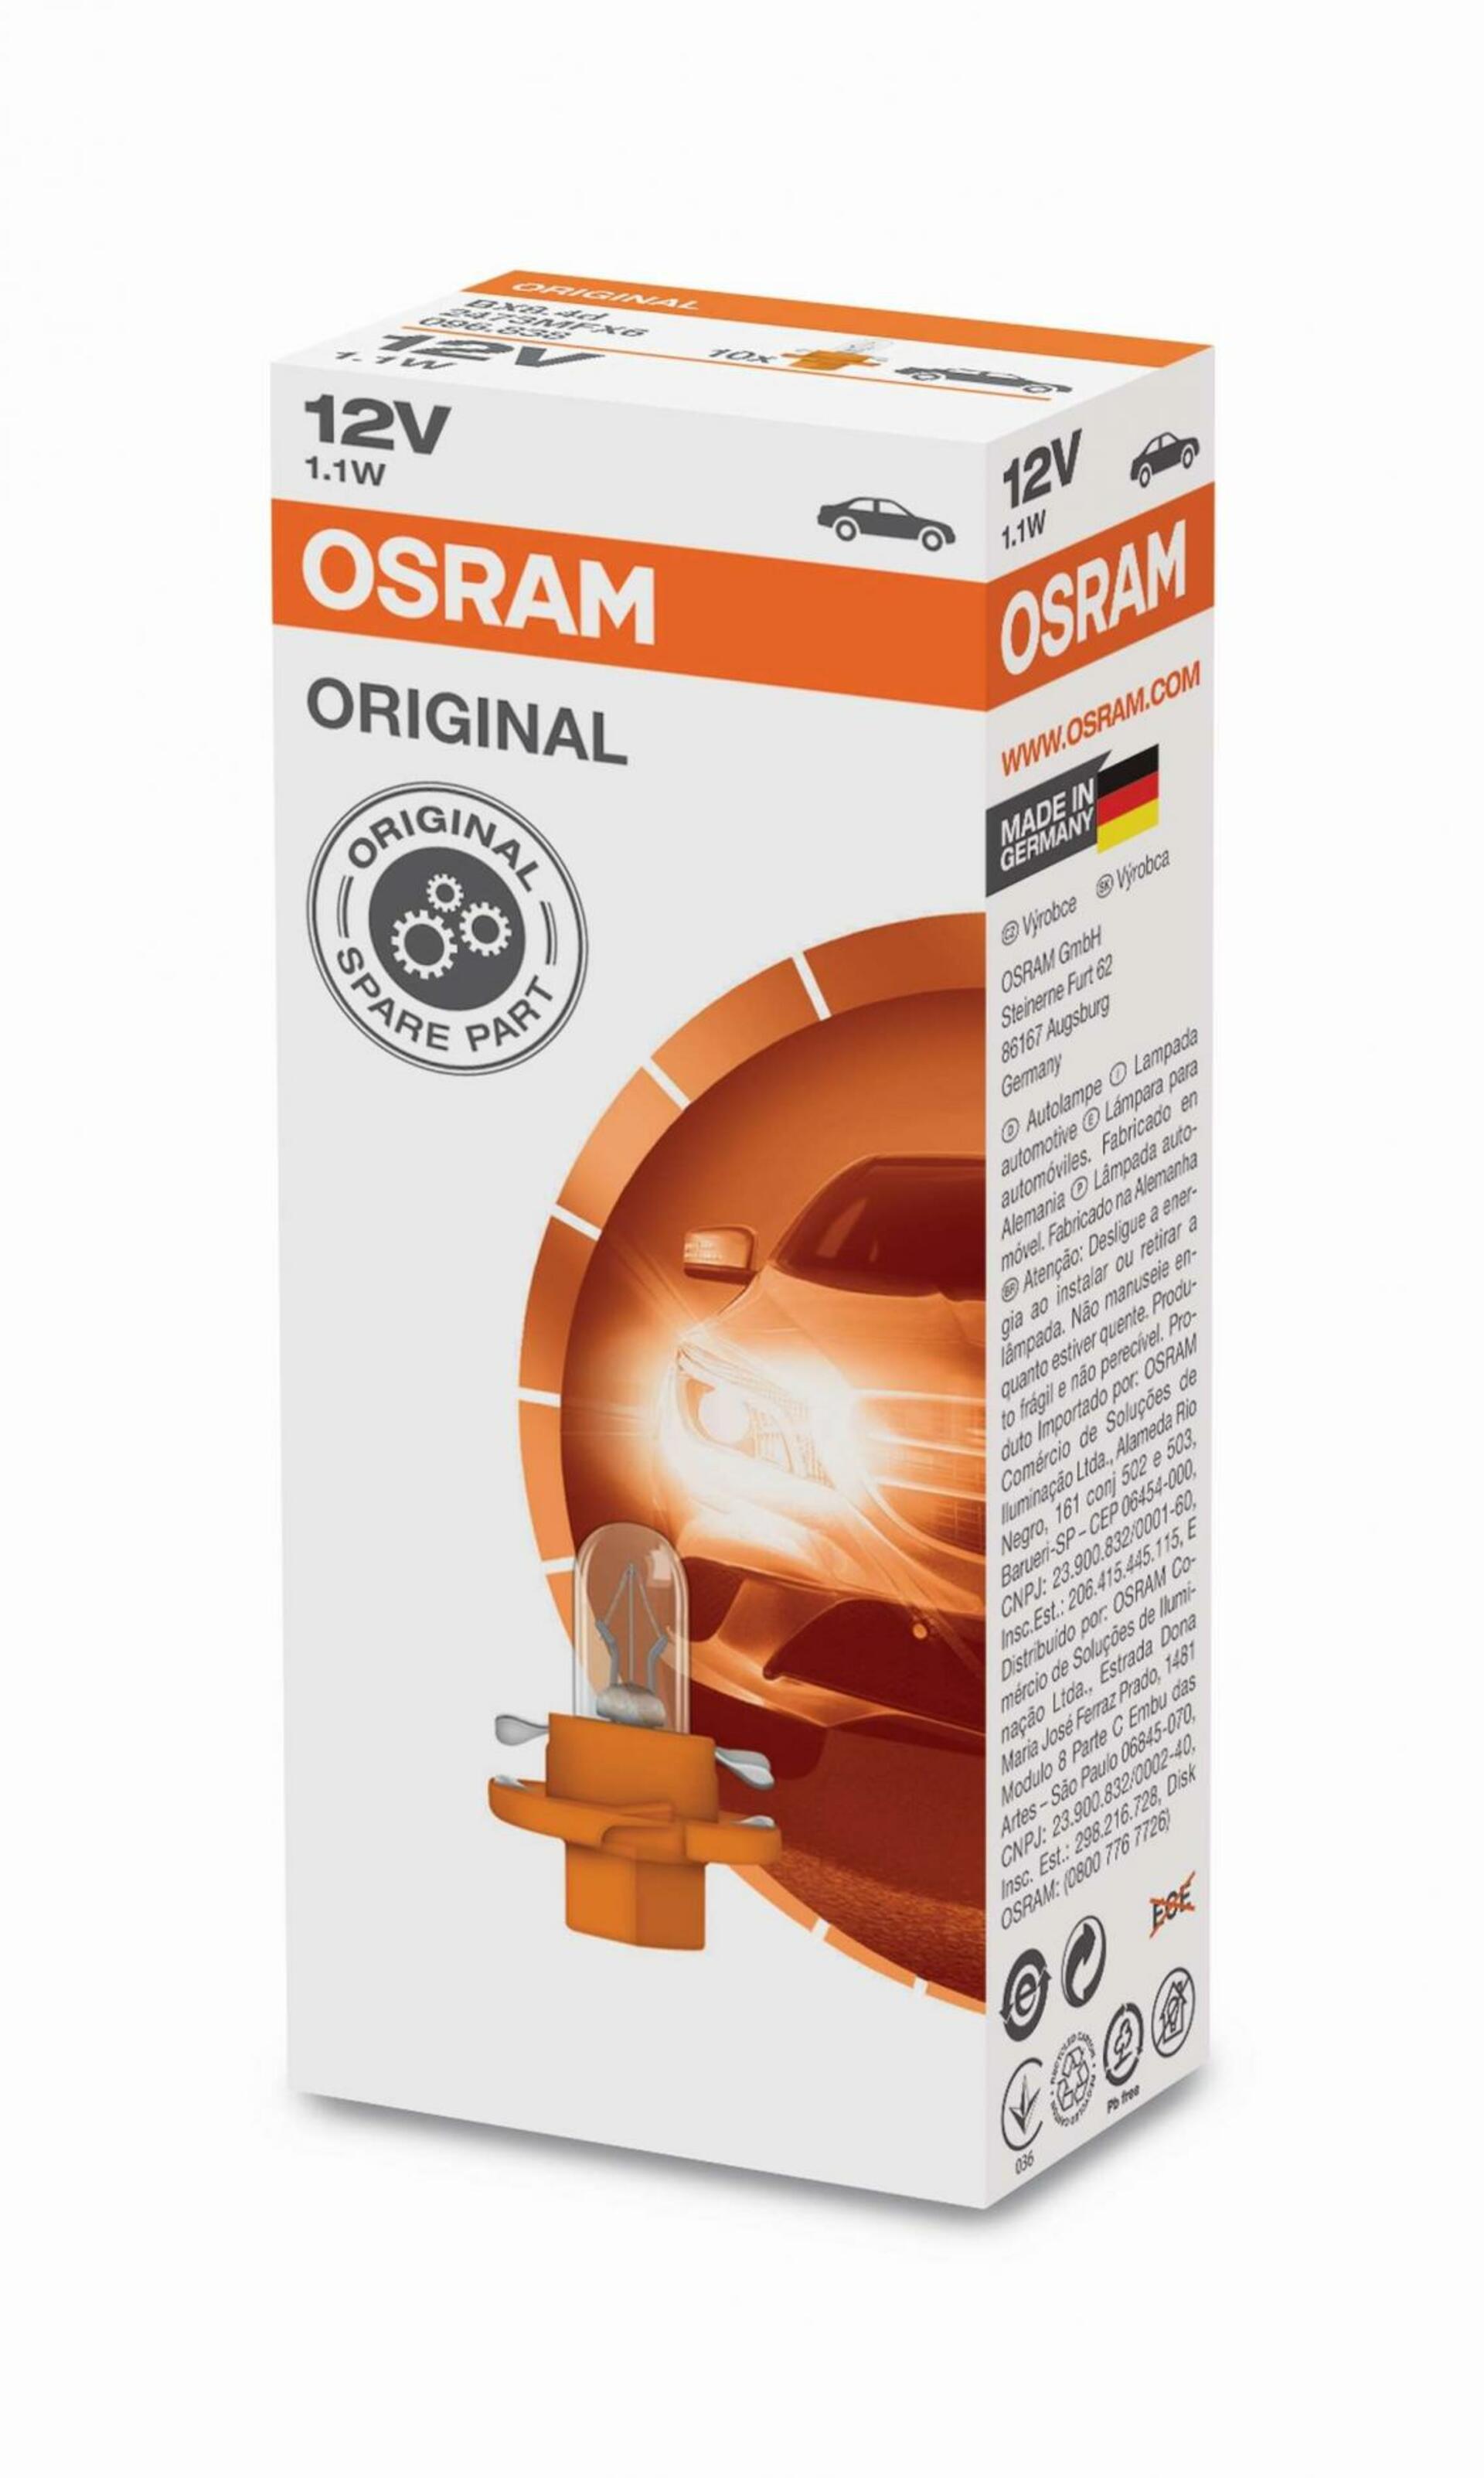 OSRAM 2473MFX6 1,1W 12V